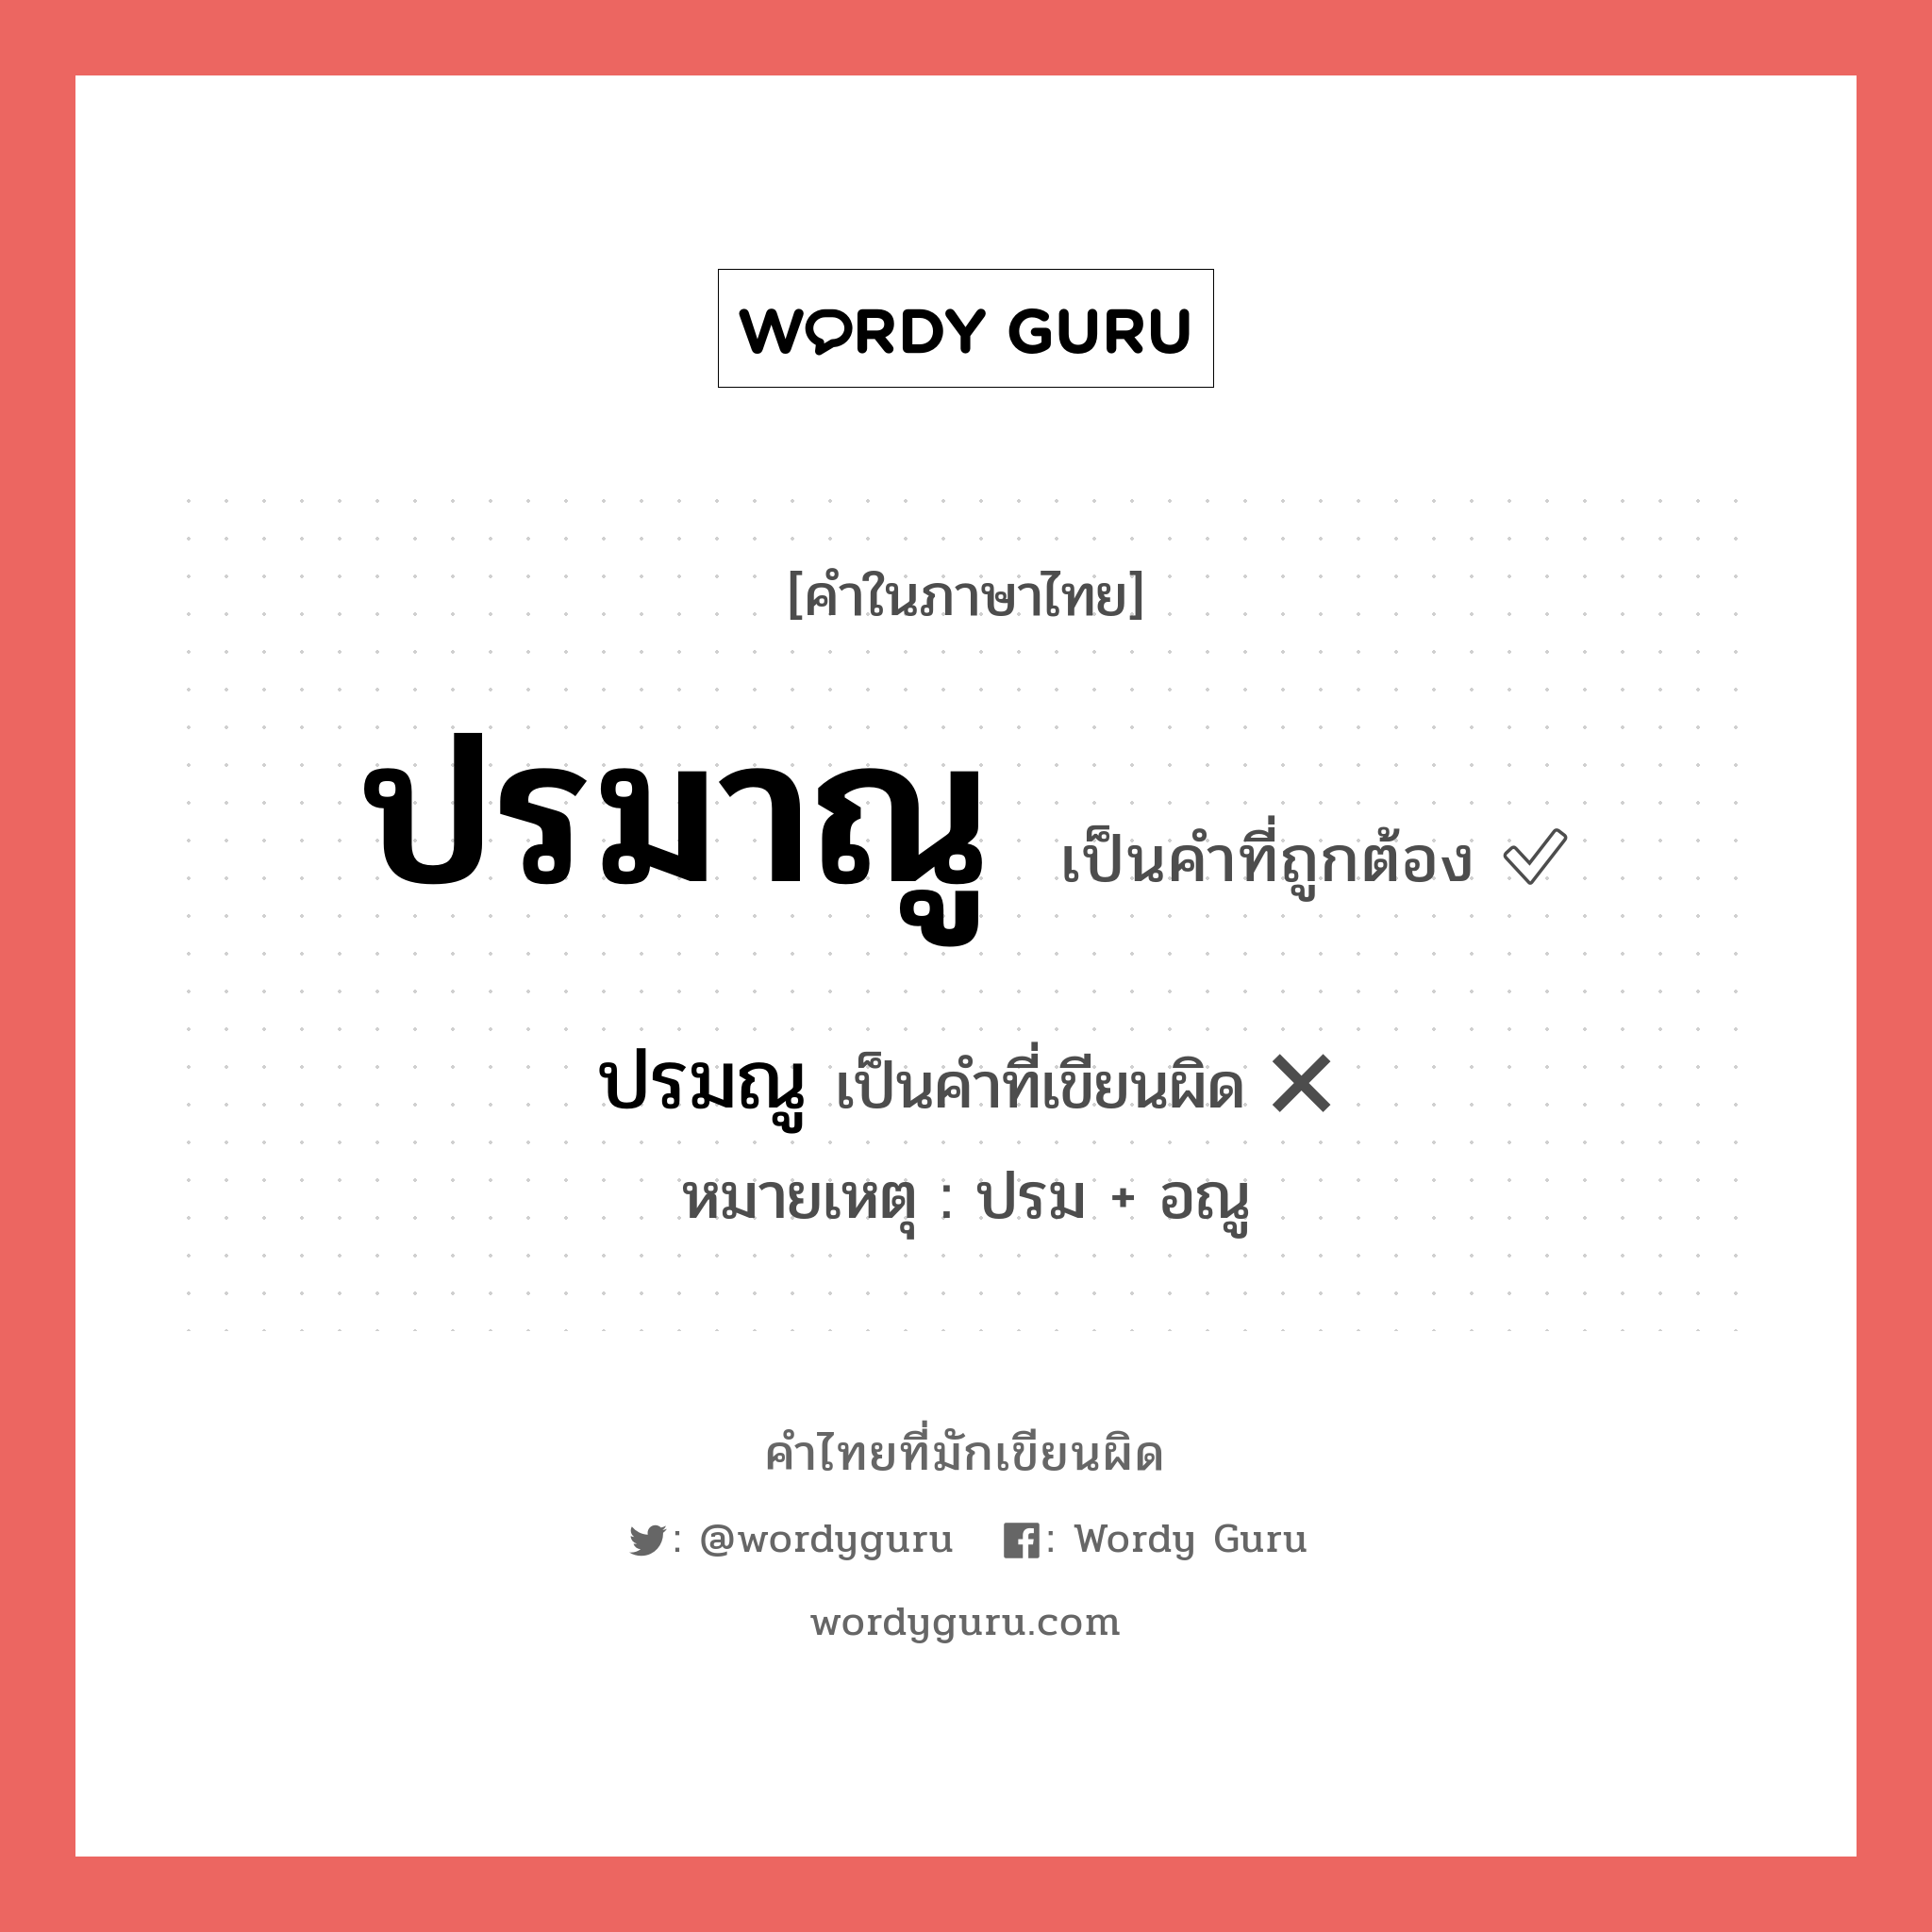 ปรมาณู หรือ ปรมณู คำไหนเขียนถูก?, คำในภาษาไทยที่มักเขียนผิด ปรมาณู คำที่ผิด ❌ ปรมณู หมายเหตุ ปรม + อณู